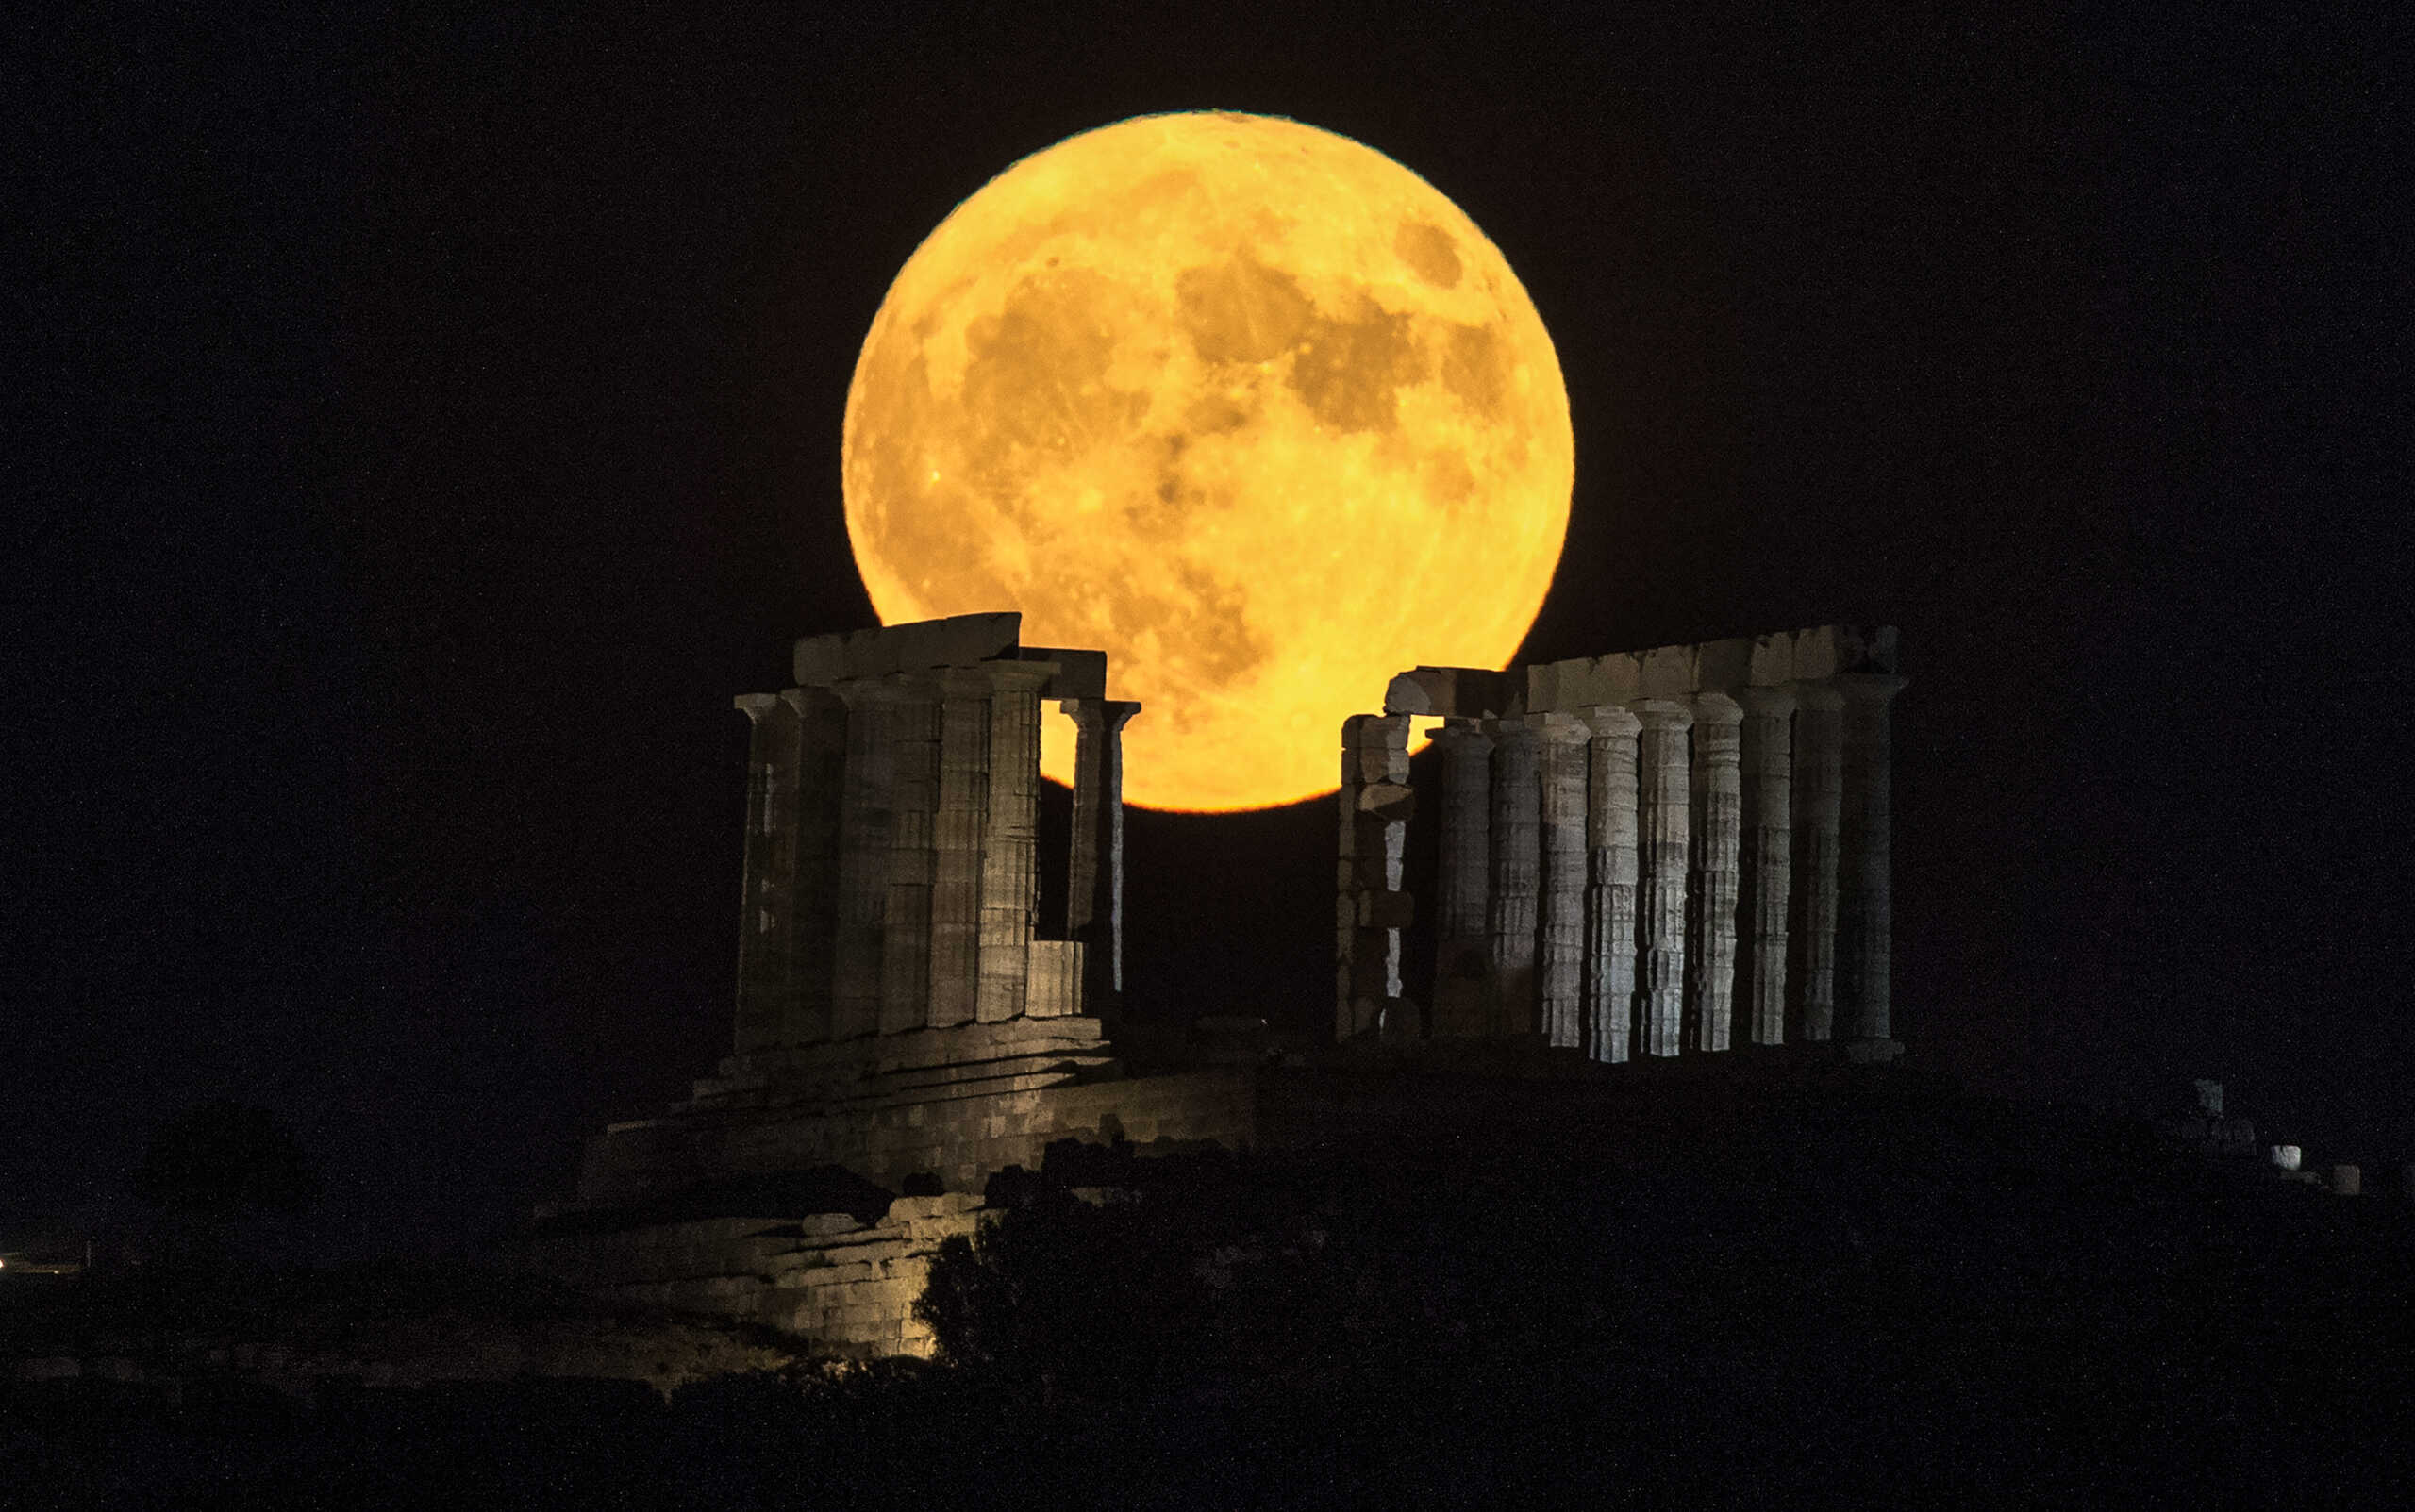 Σήμερα το «φεγγάρι του ελαφιού»: Ο λόγος που ονομάστηκε έτσι η πανσέληνος του Ιουλίου